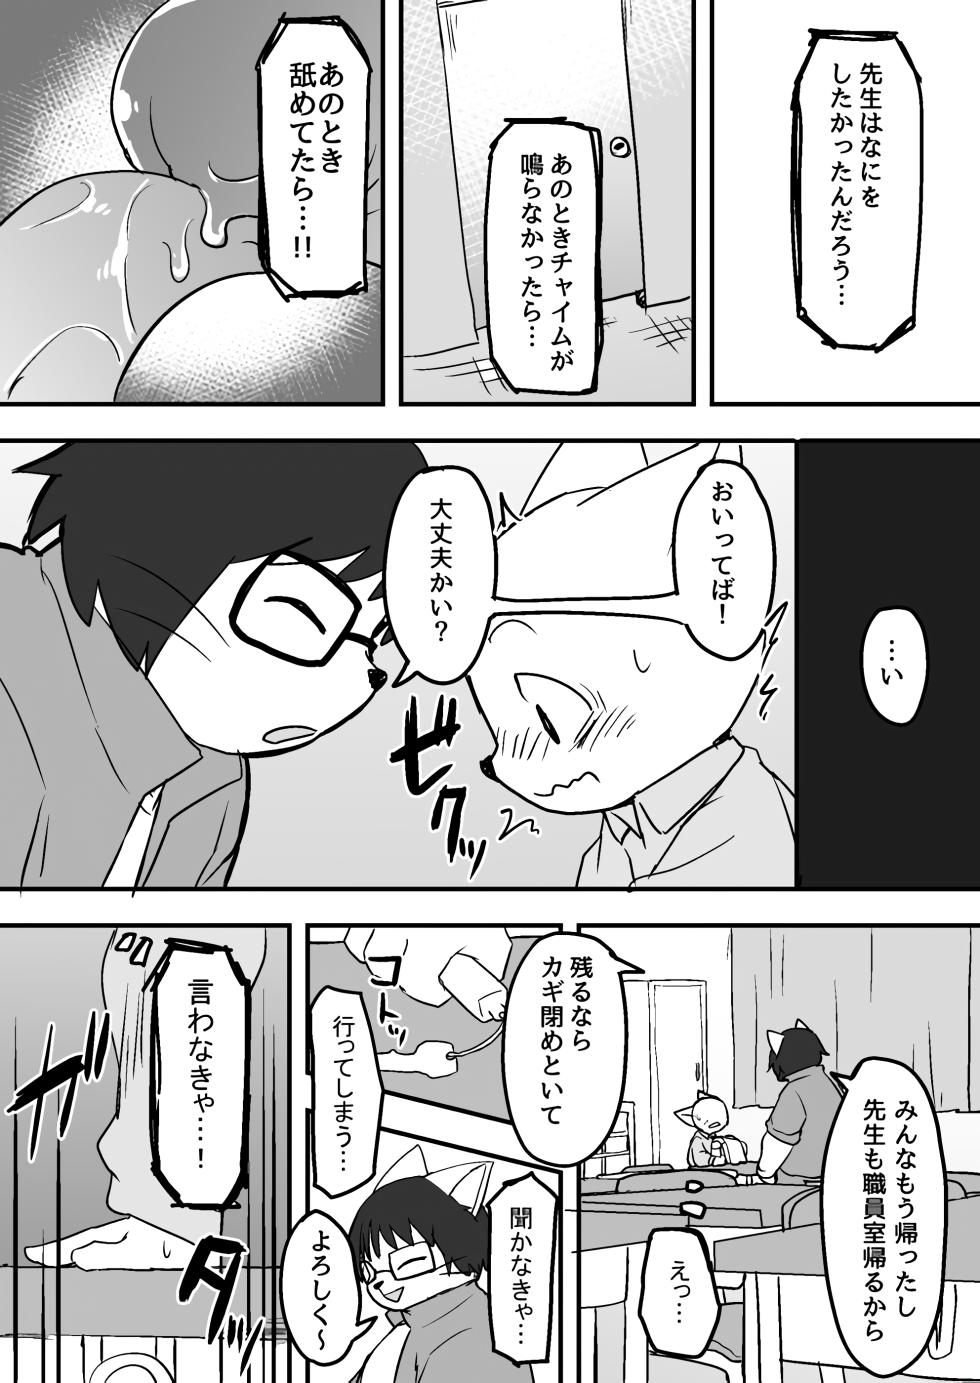 Manmosu Marimo - Sensei Story #1 (Raw) - Page 10